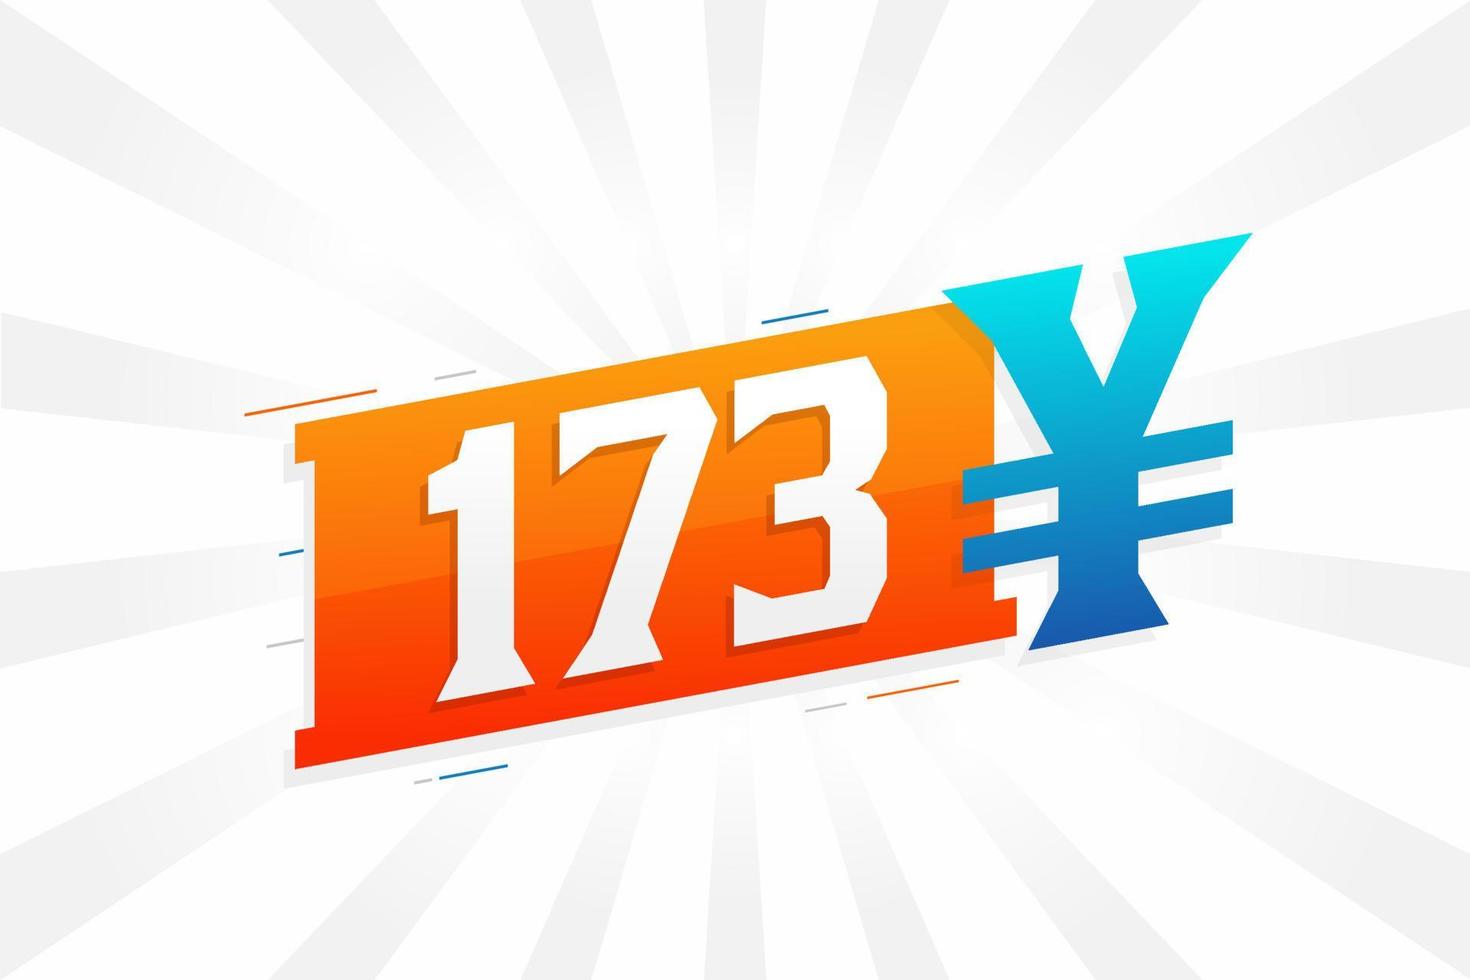 Símbolo de texto vectorial de moneda china de 173 yuanes. 173 yen moneda japonesa dinero stock vector